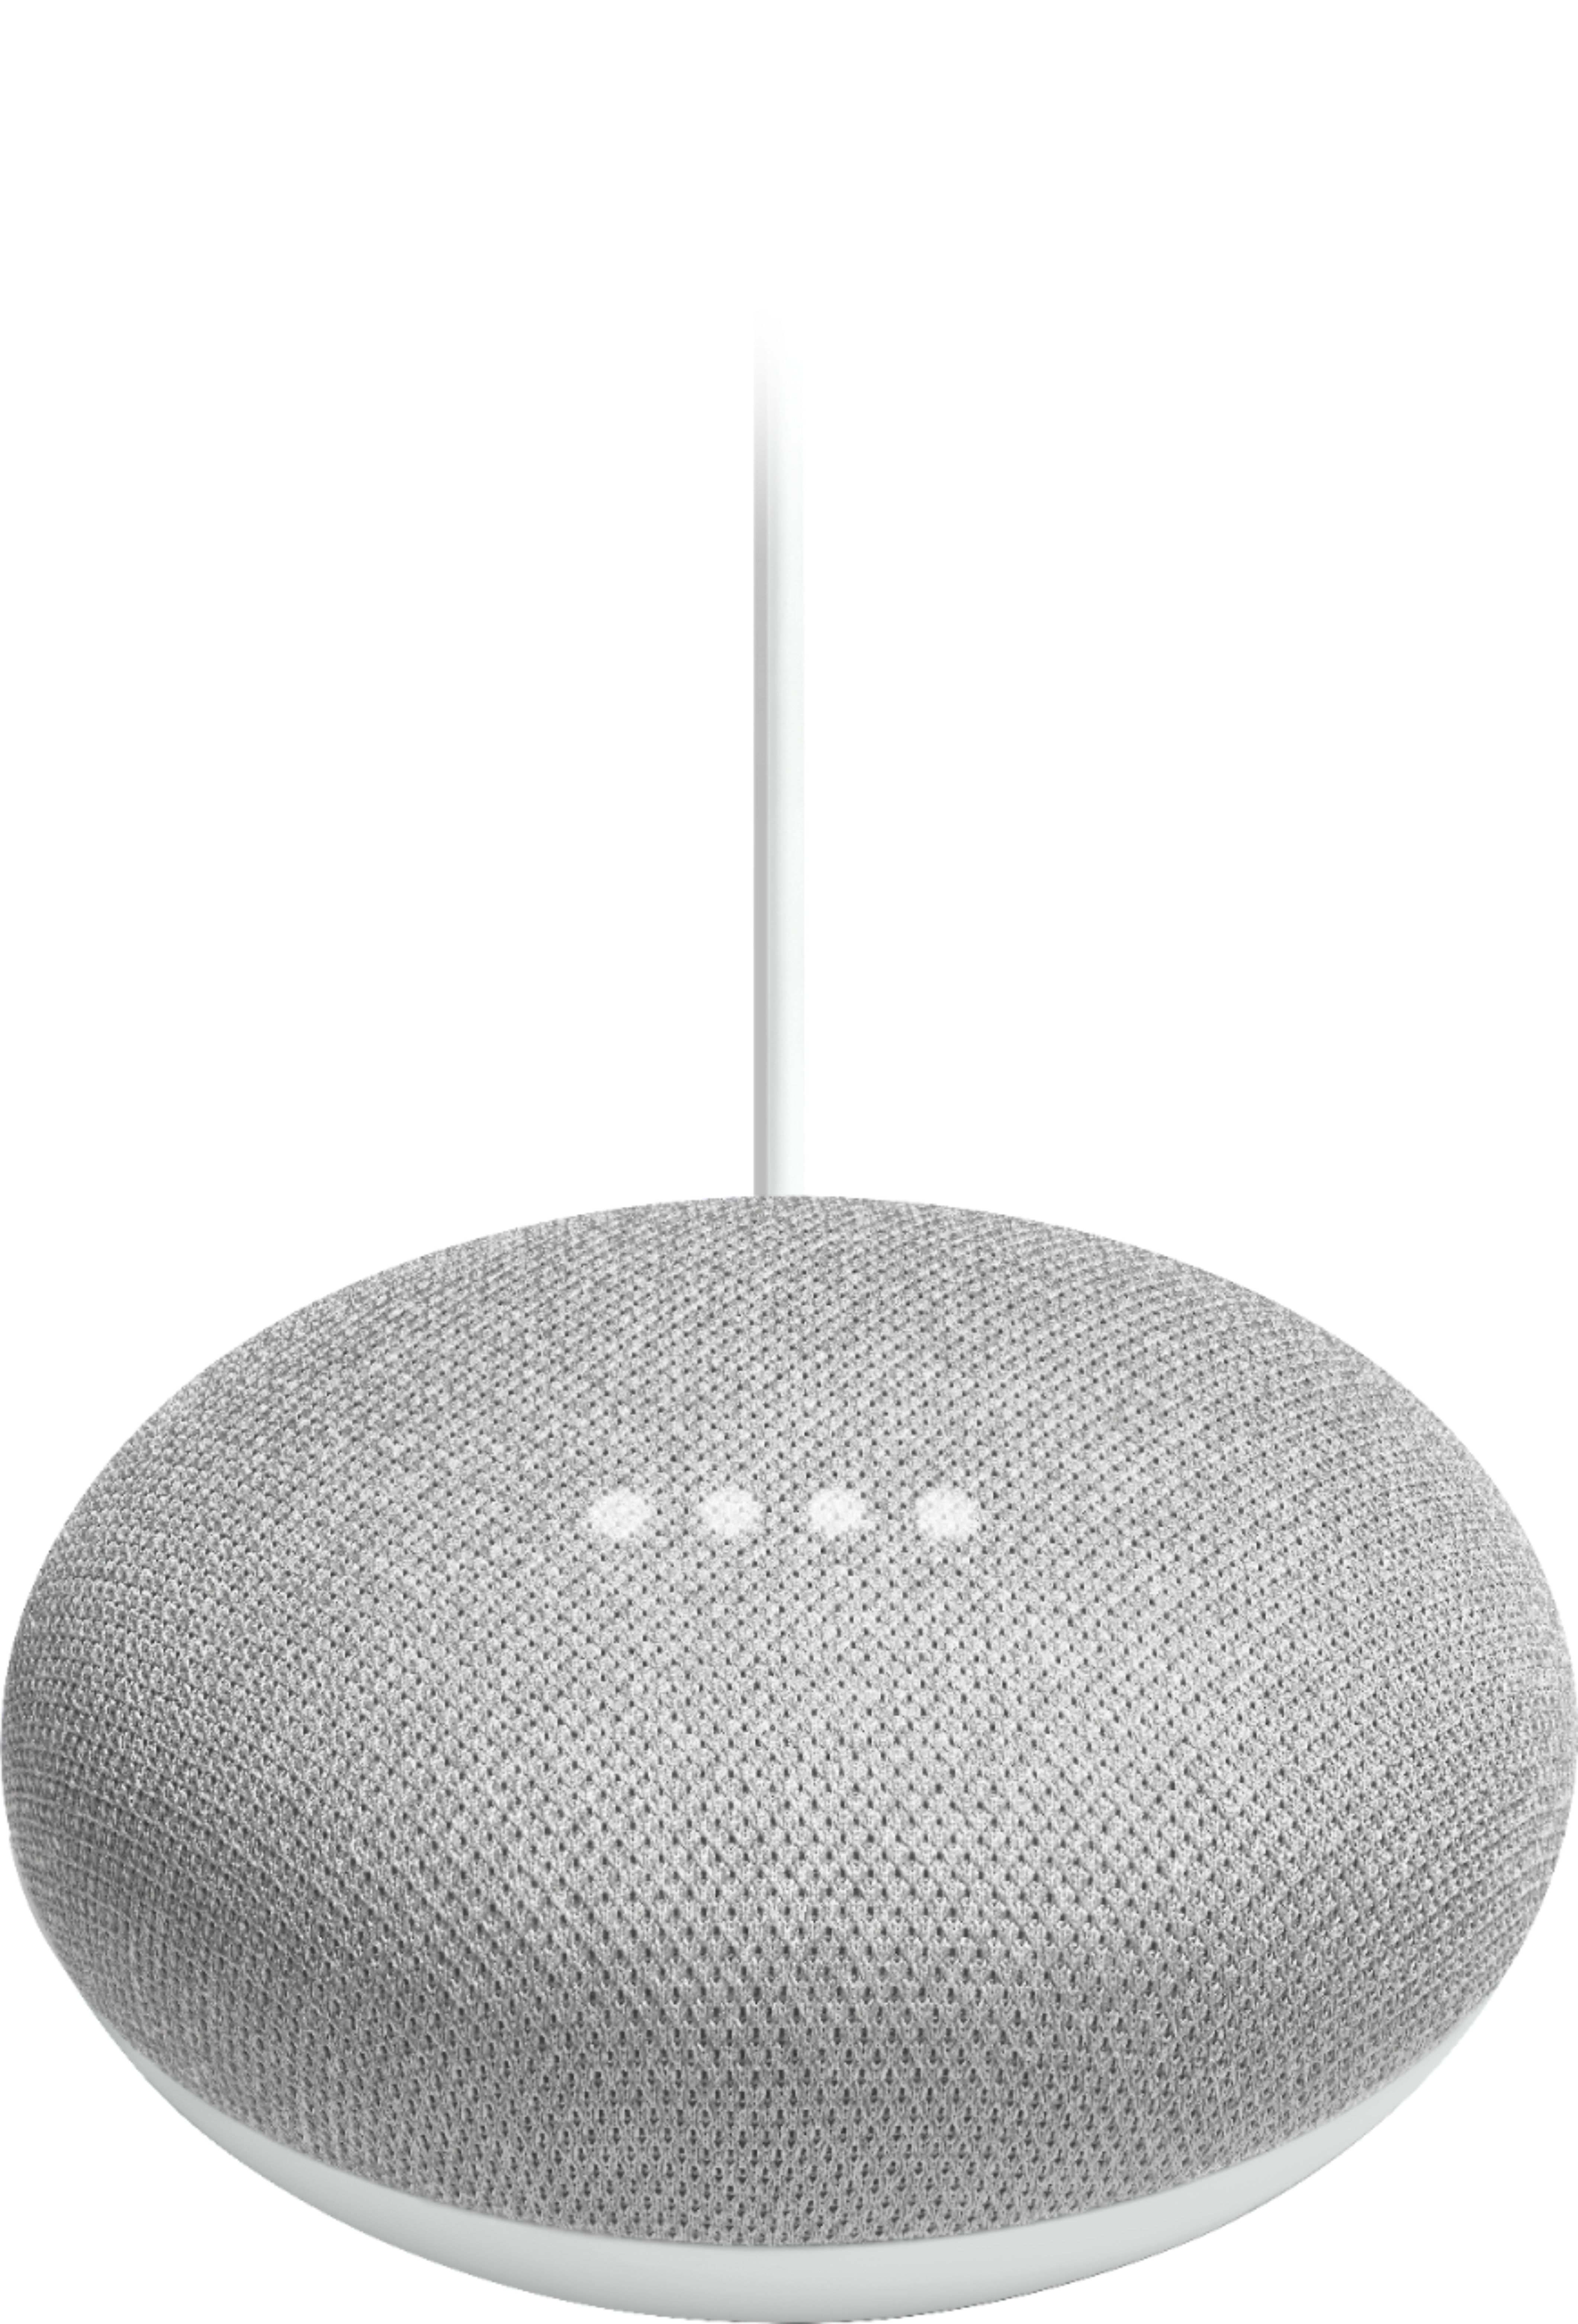 Chalk Google Voice Assistant Google Home Mini 